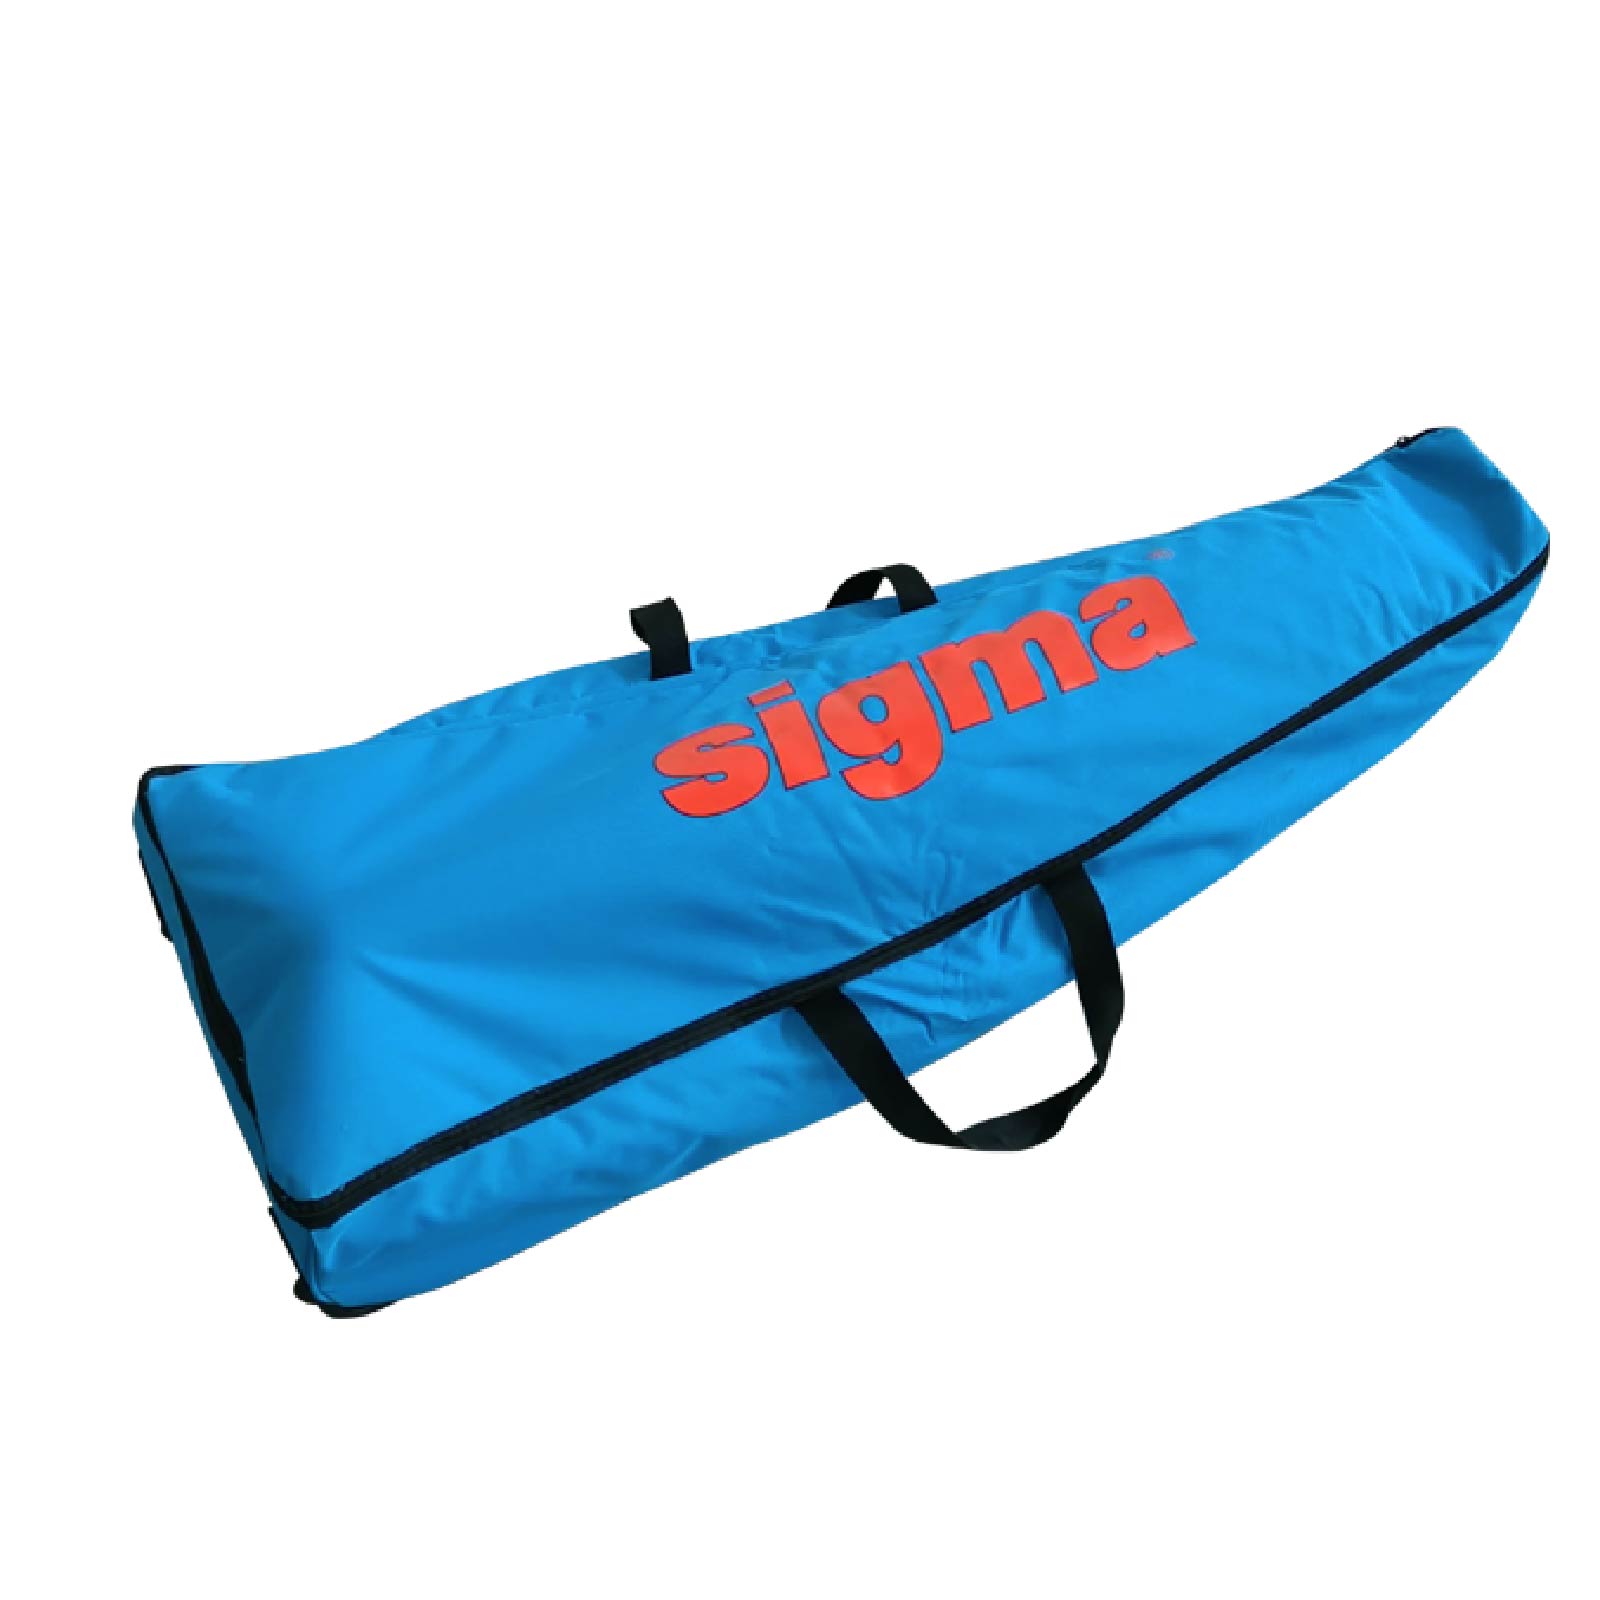 NEOUS Small Sigma Tote Bag - Farfetch